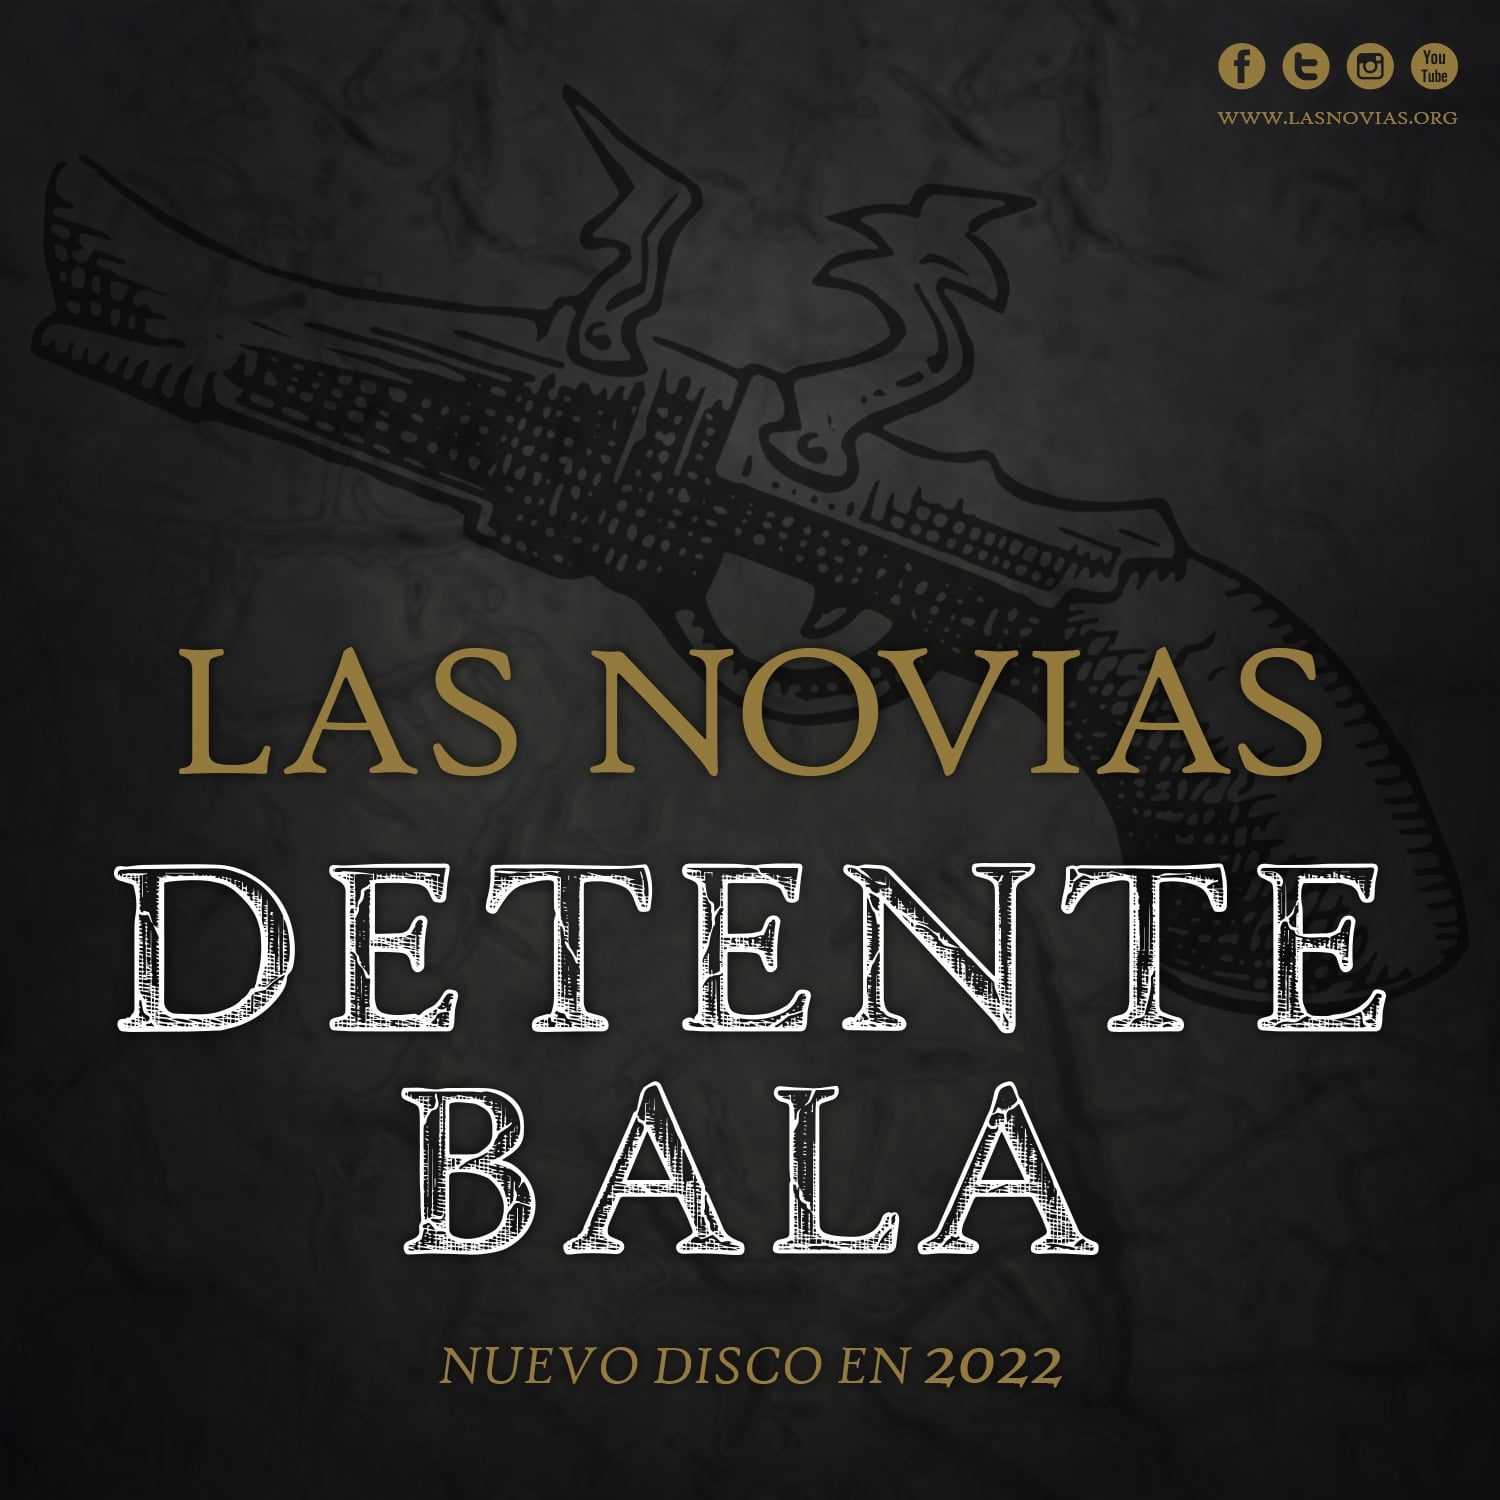 LAS NOVIAS presentan el vídeo de “Misericorde” primer avance de Detente Bala